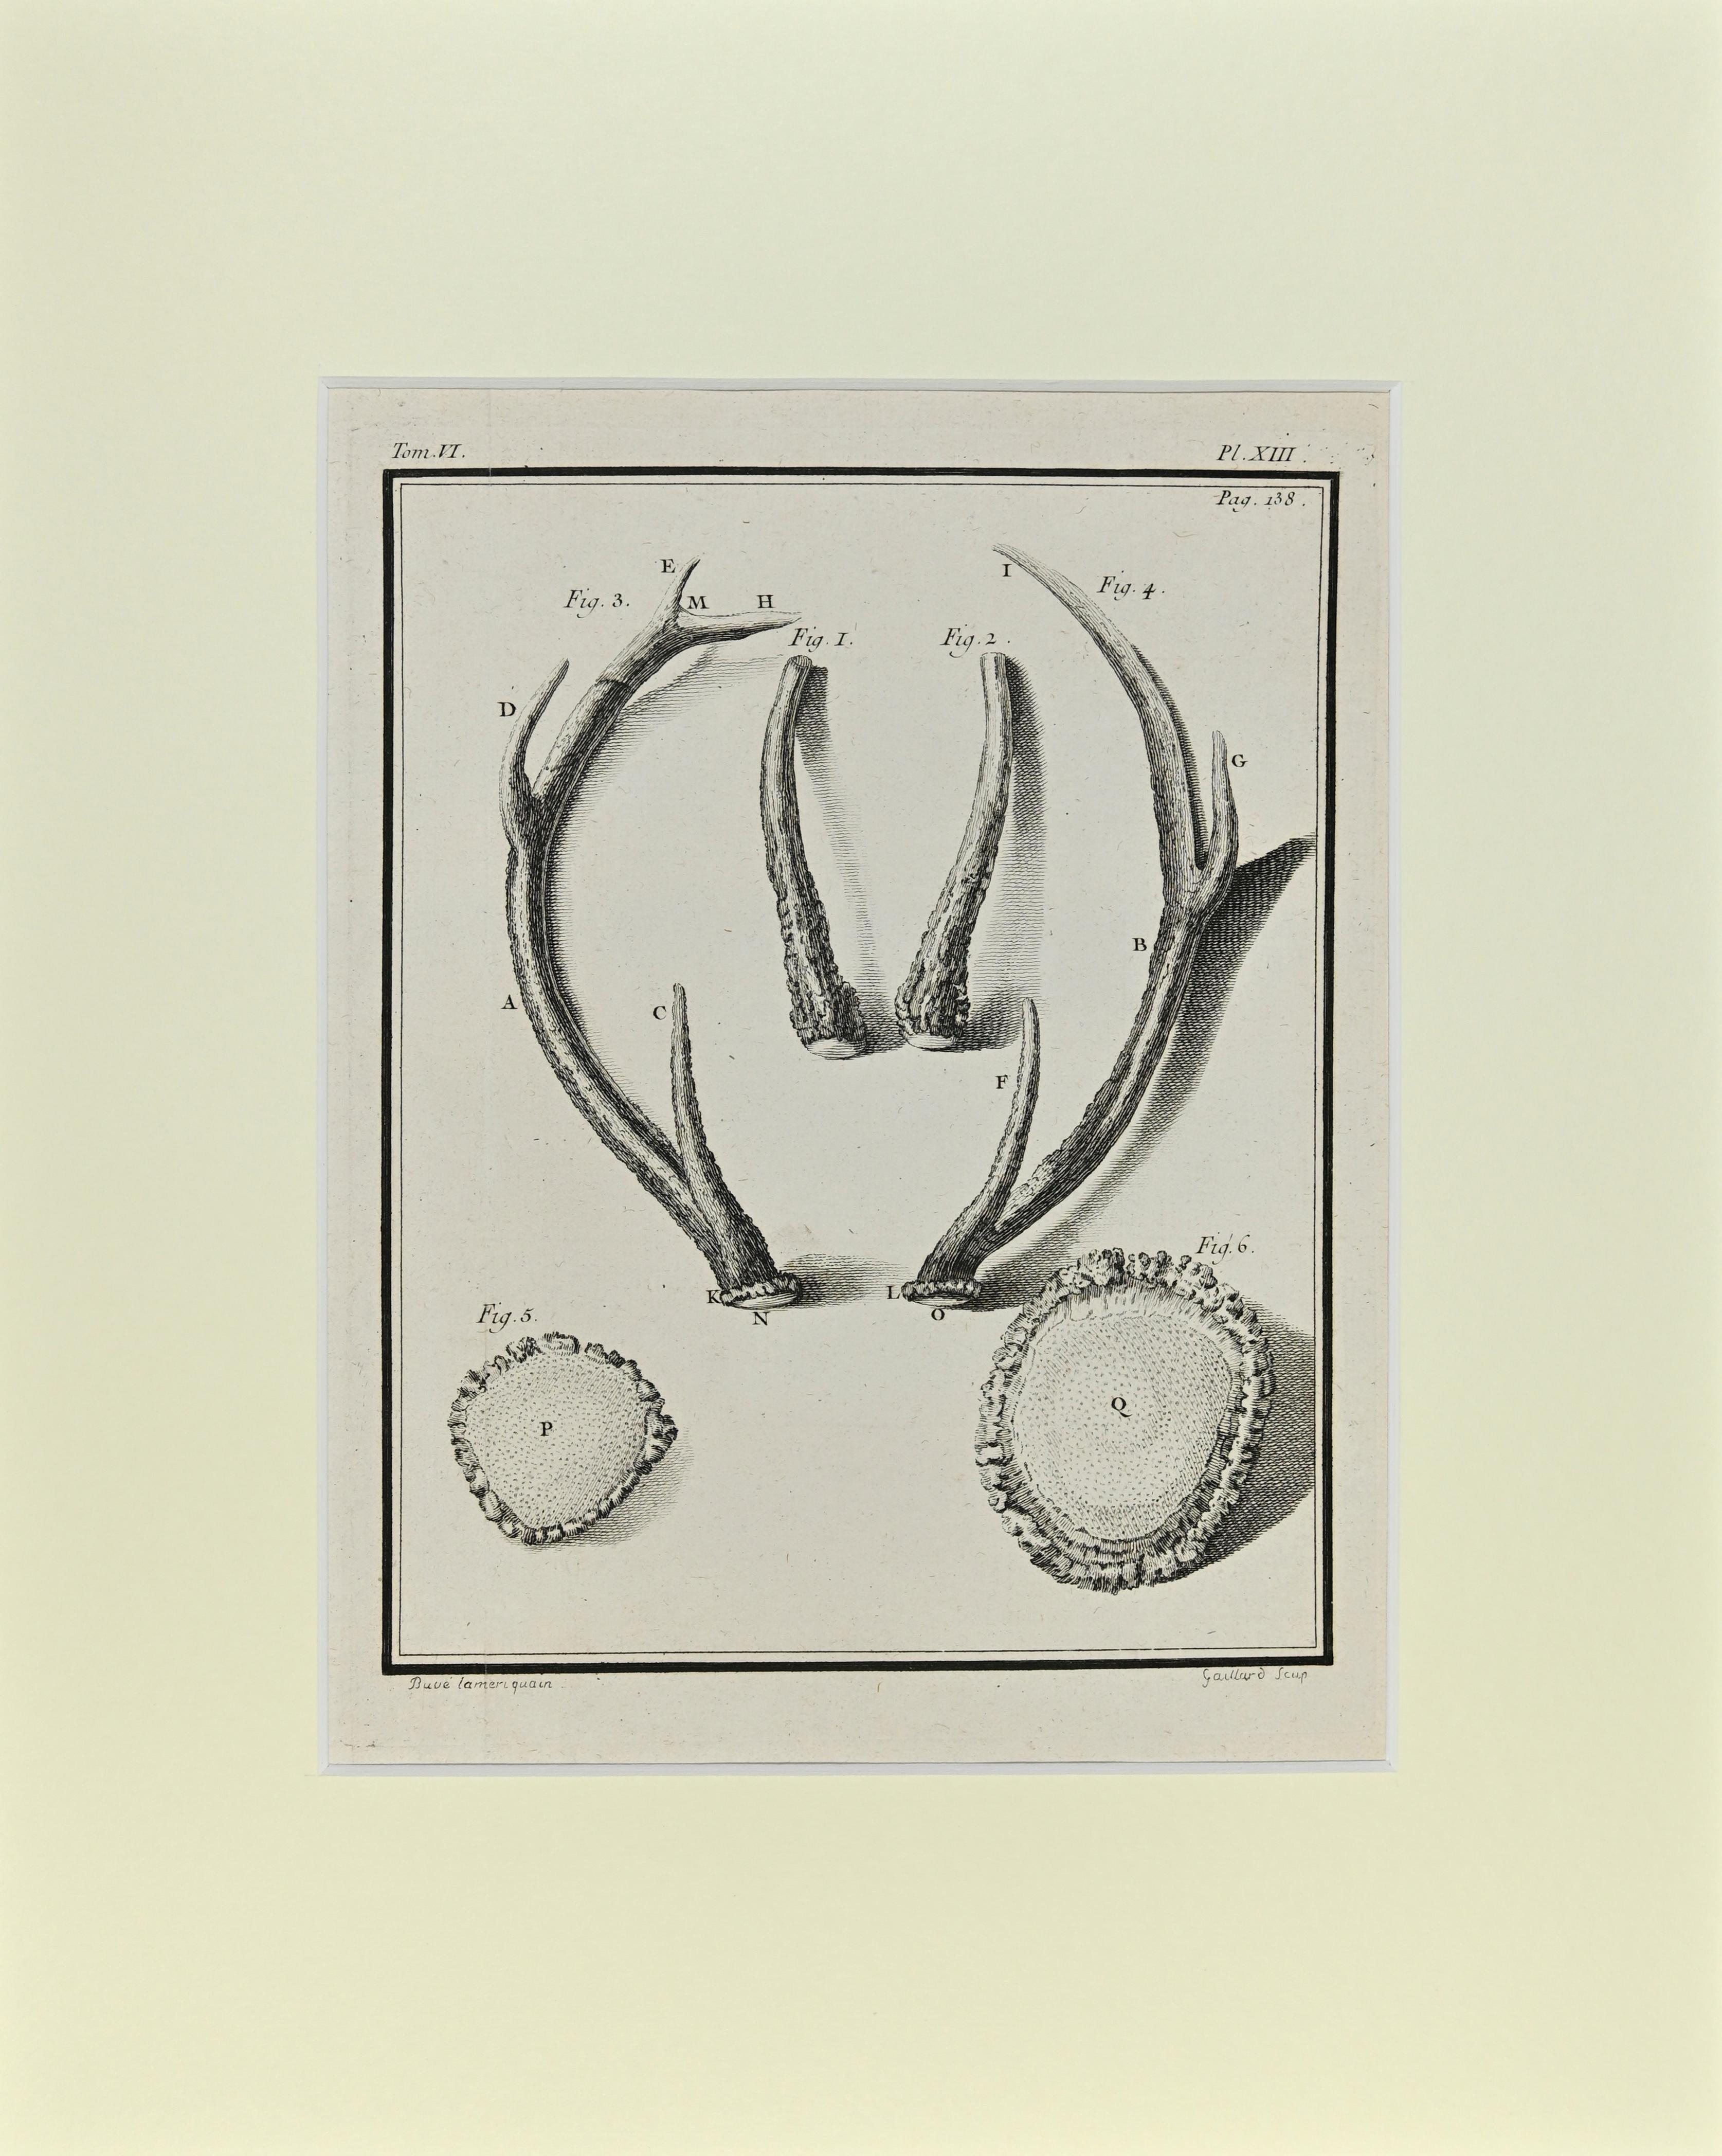 Les cornes de cerf est une œuvre d'art réalisée par Buvée l'Américain en 1771.  

Gravure à l'eau-forte B./W. sur papier ivoire. Signé sur la plaque dans la marge inférieure gauche.

L'œuvre est collée sur du carton. Dimensions totales : 35x28